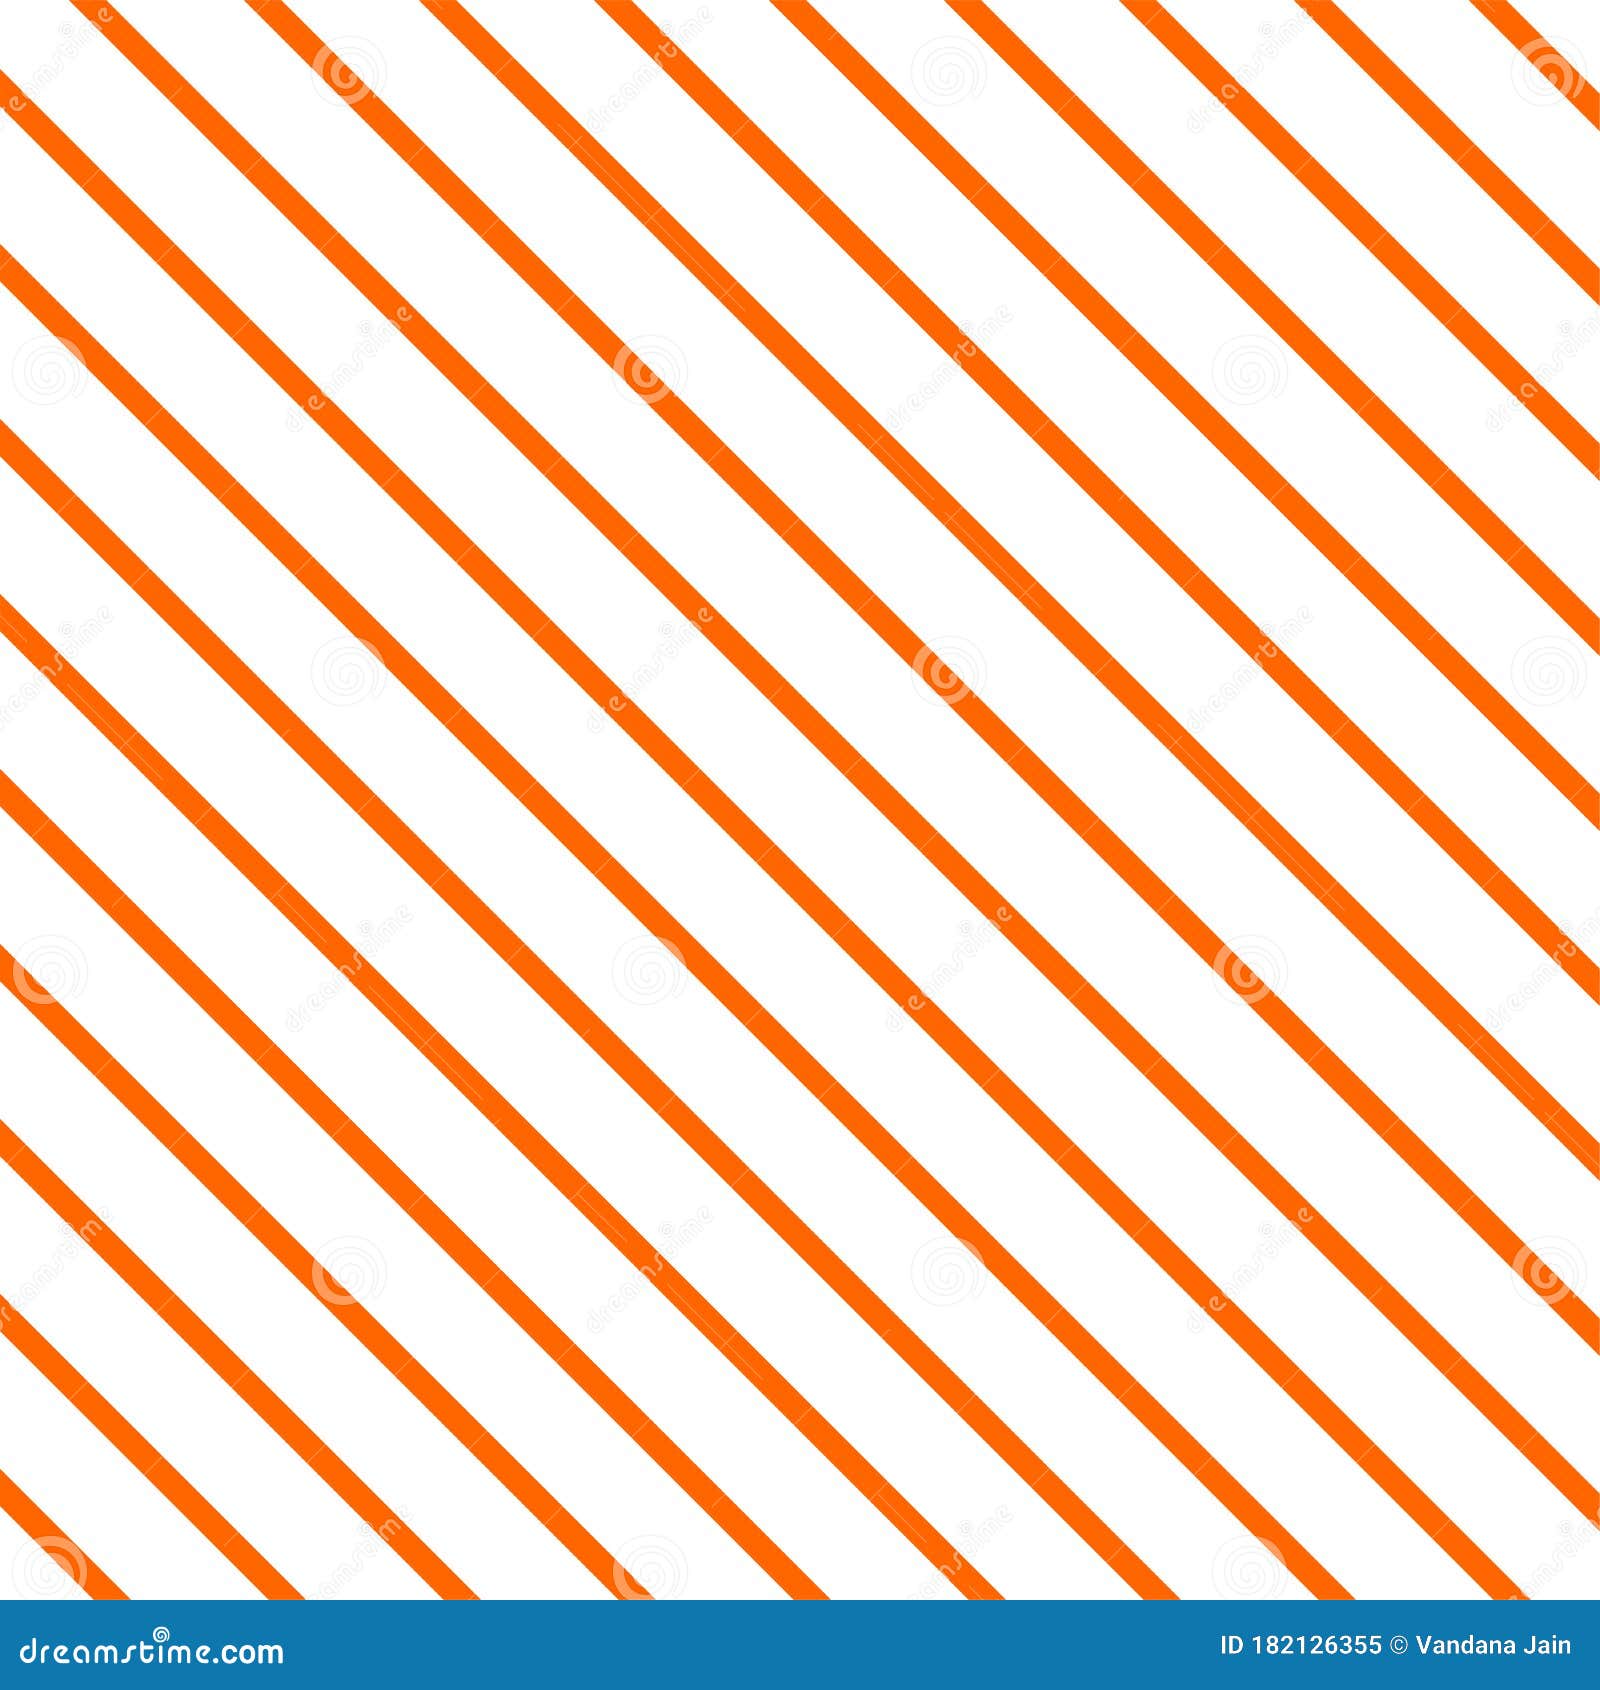 Nền đối xứng sọc màu cam và trắng là một sự lựa chọn tuyệt vời để làm nổi bật sản phẩm của bạn. Hiệu ứng sọc sẽ tạo nên một kết cấu độc đáo và hấp dẫn, giúp cho sản phẩm trở nên độc đáo và nổi bật hơn bao giờ hết.